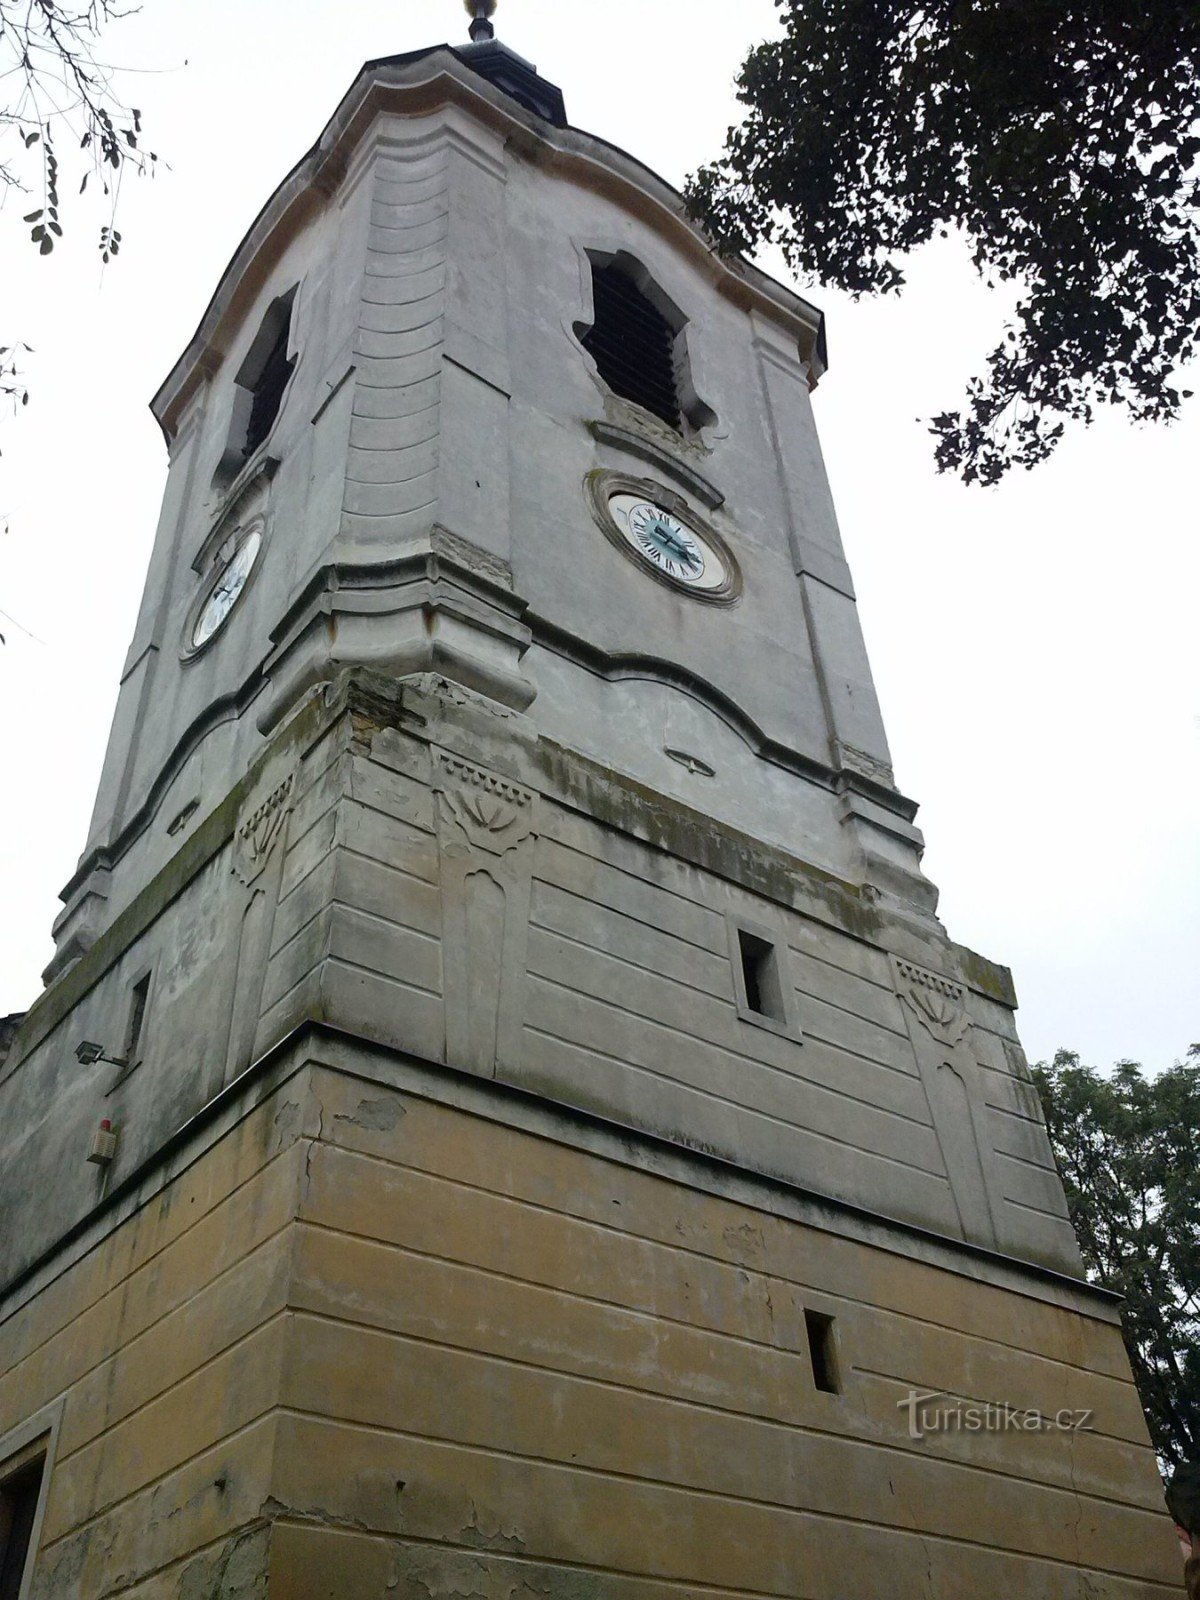 2. Tháp nhà thờ